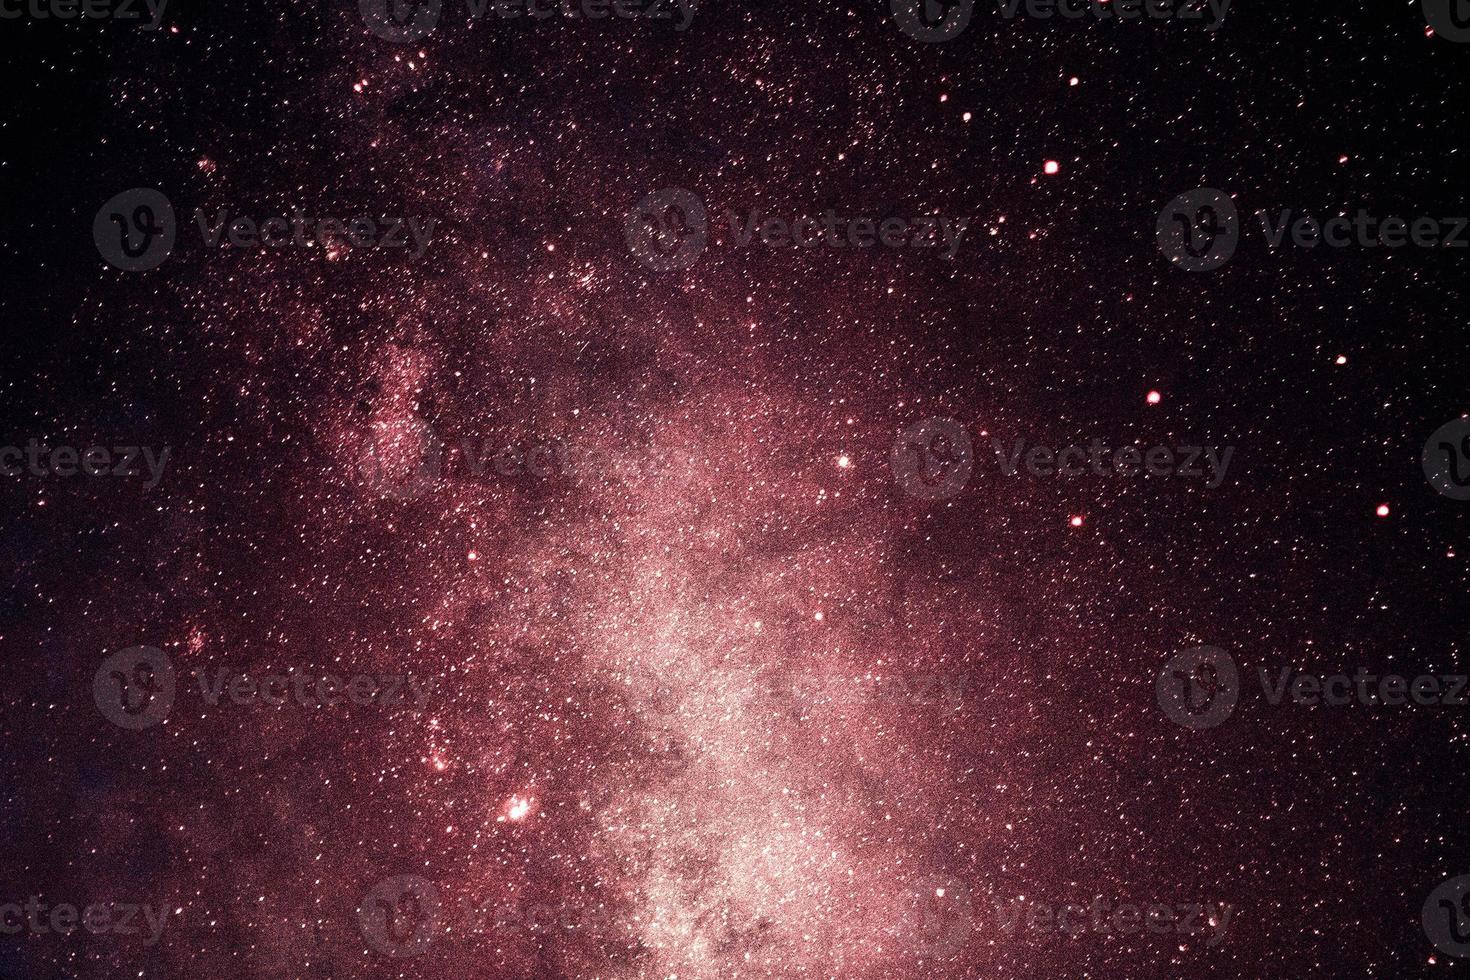 Luz azul espectacular panorama nocturno de galaxias desde el espacio del universo lunar en el cielo nocturno foto